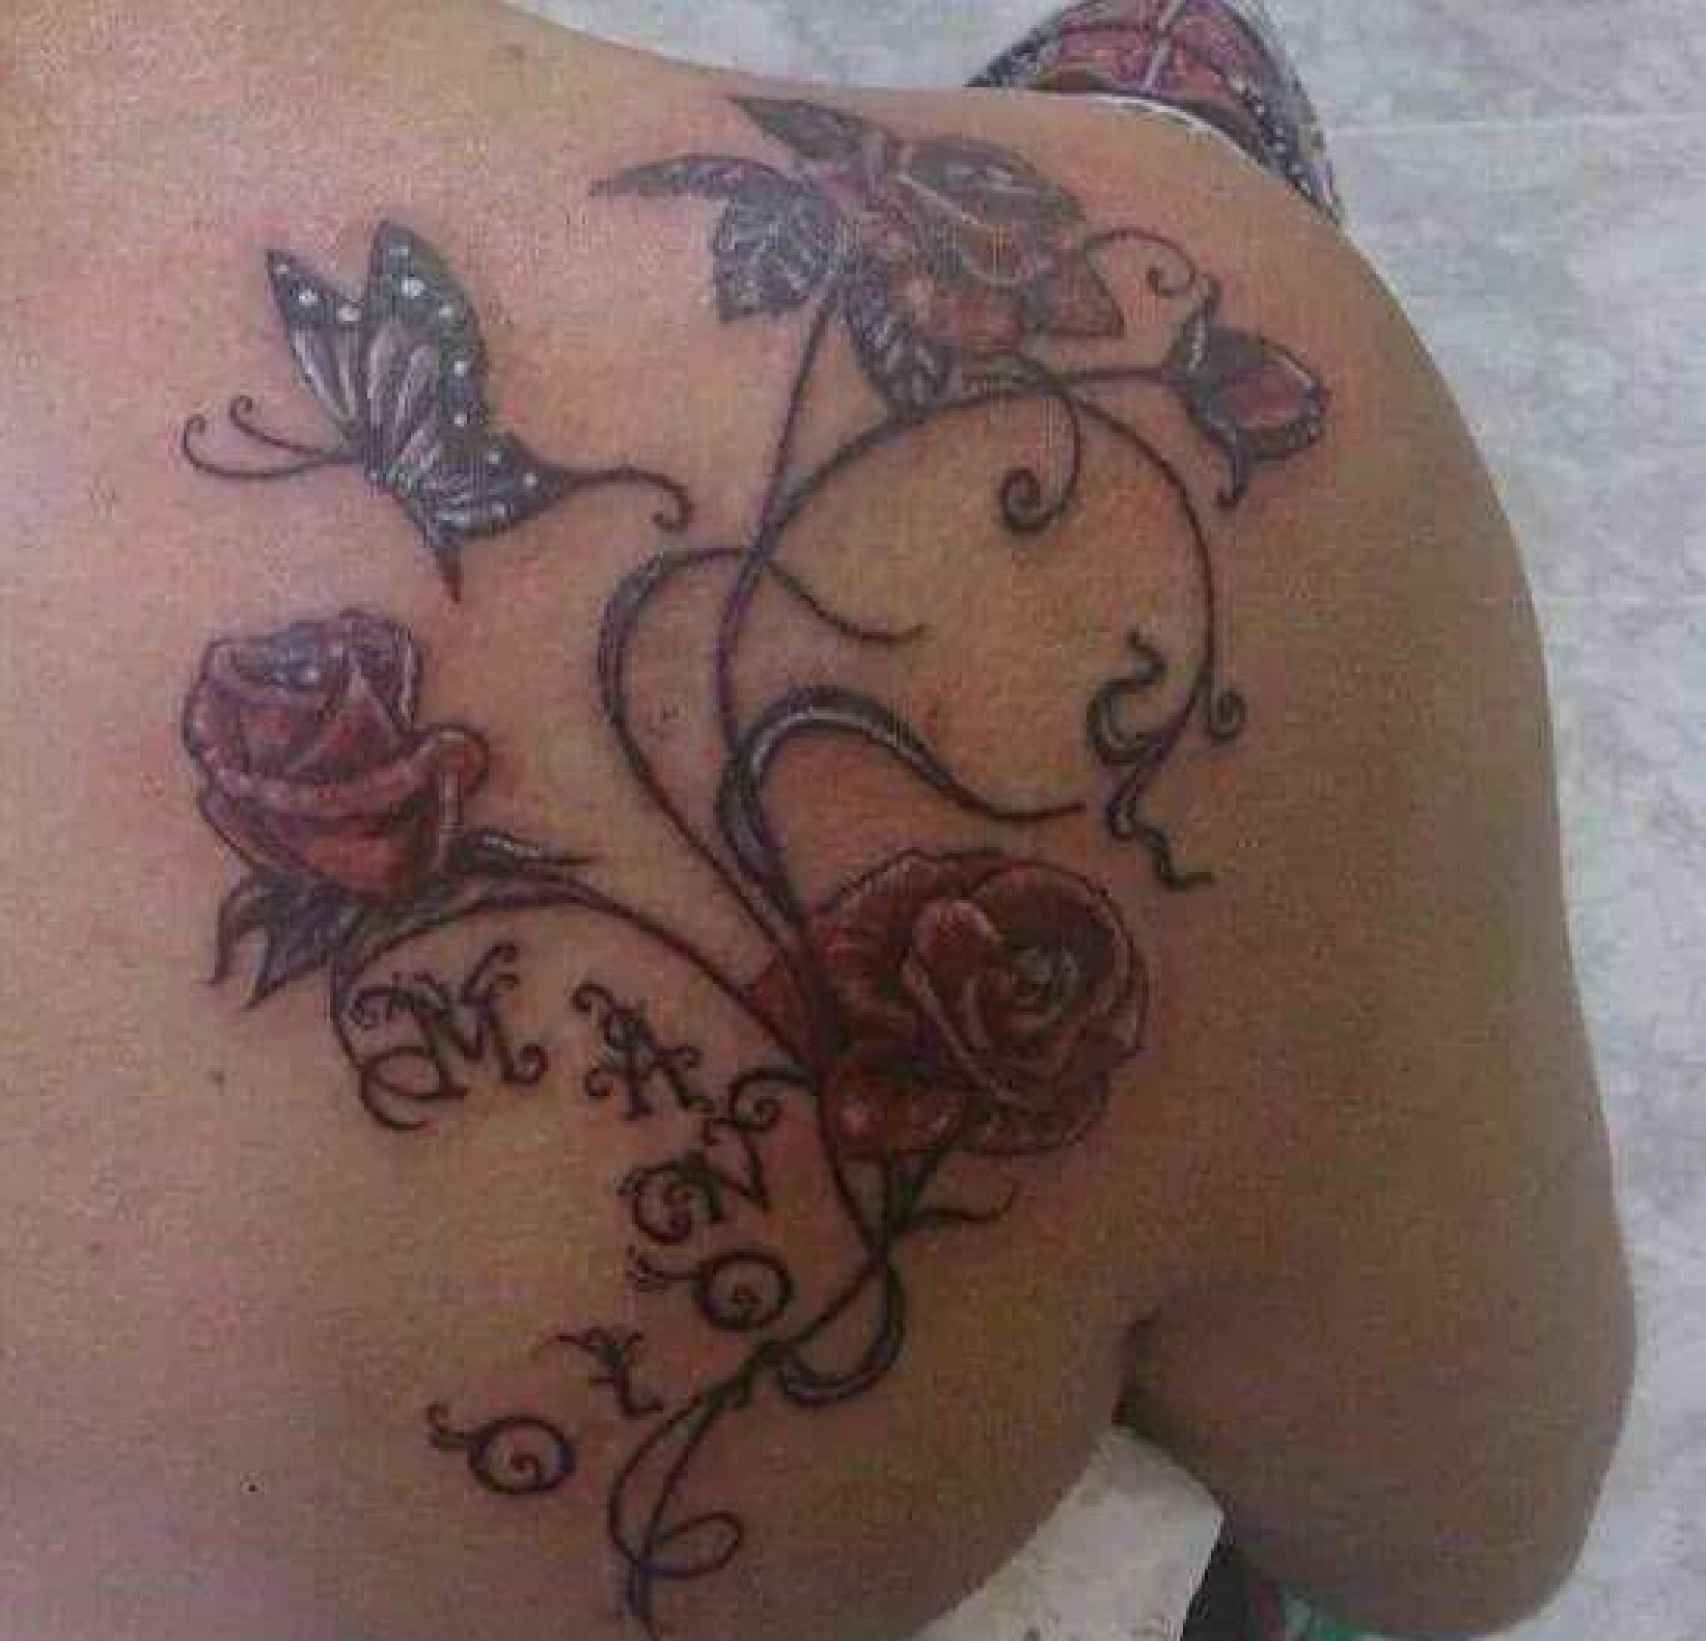 Ana Belén tenía tatuado en su hombro el nombre de su marido